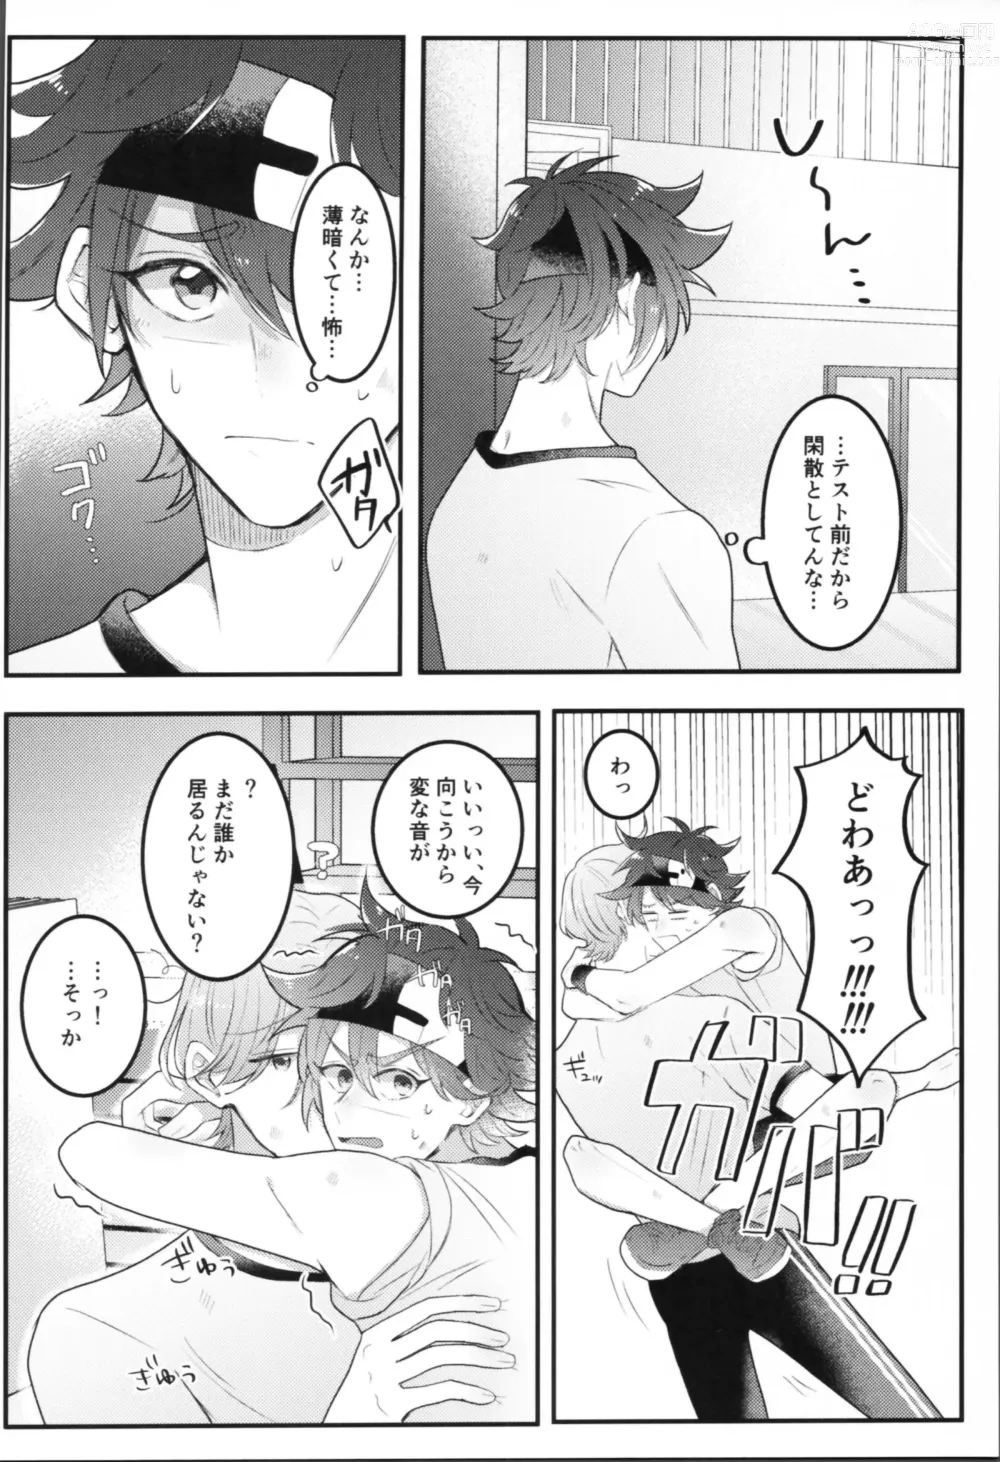 Page 5 of doujinshi Sense-saborimasu